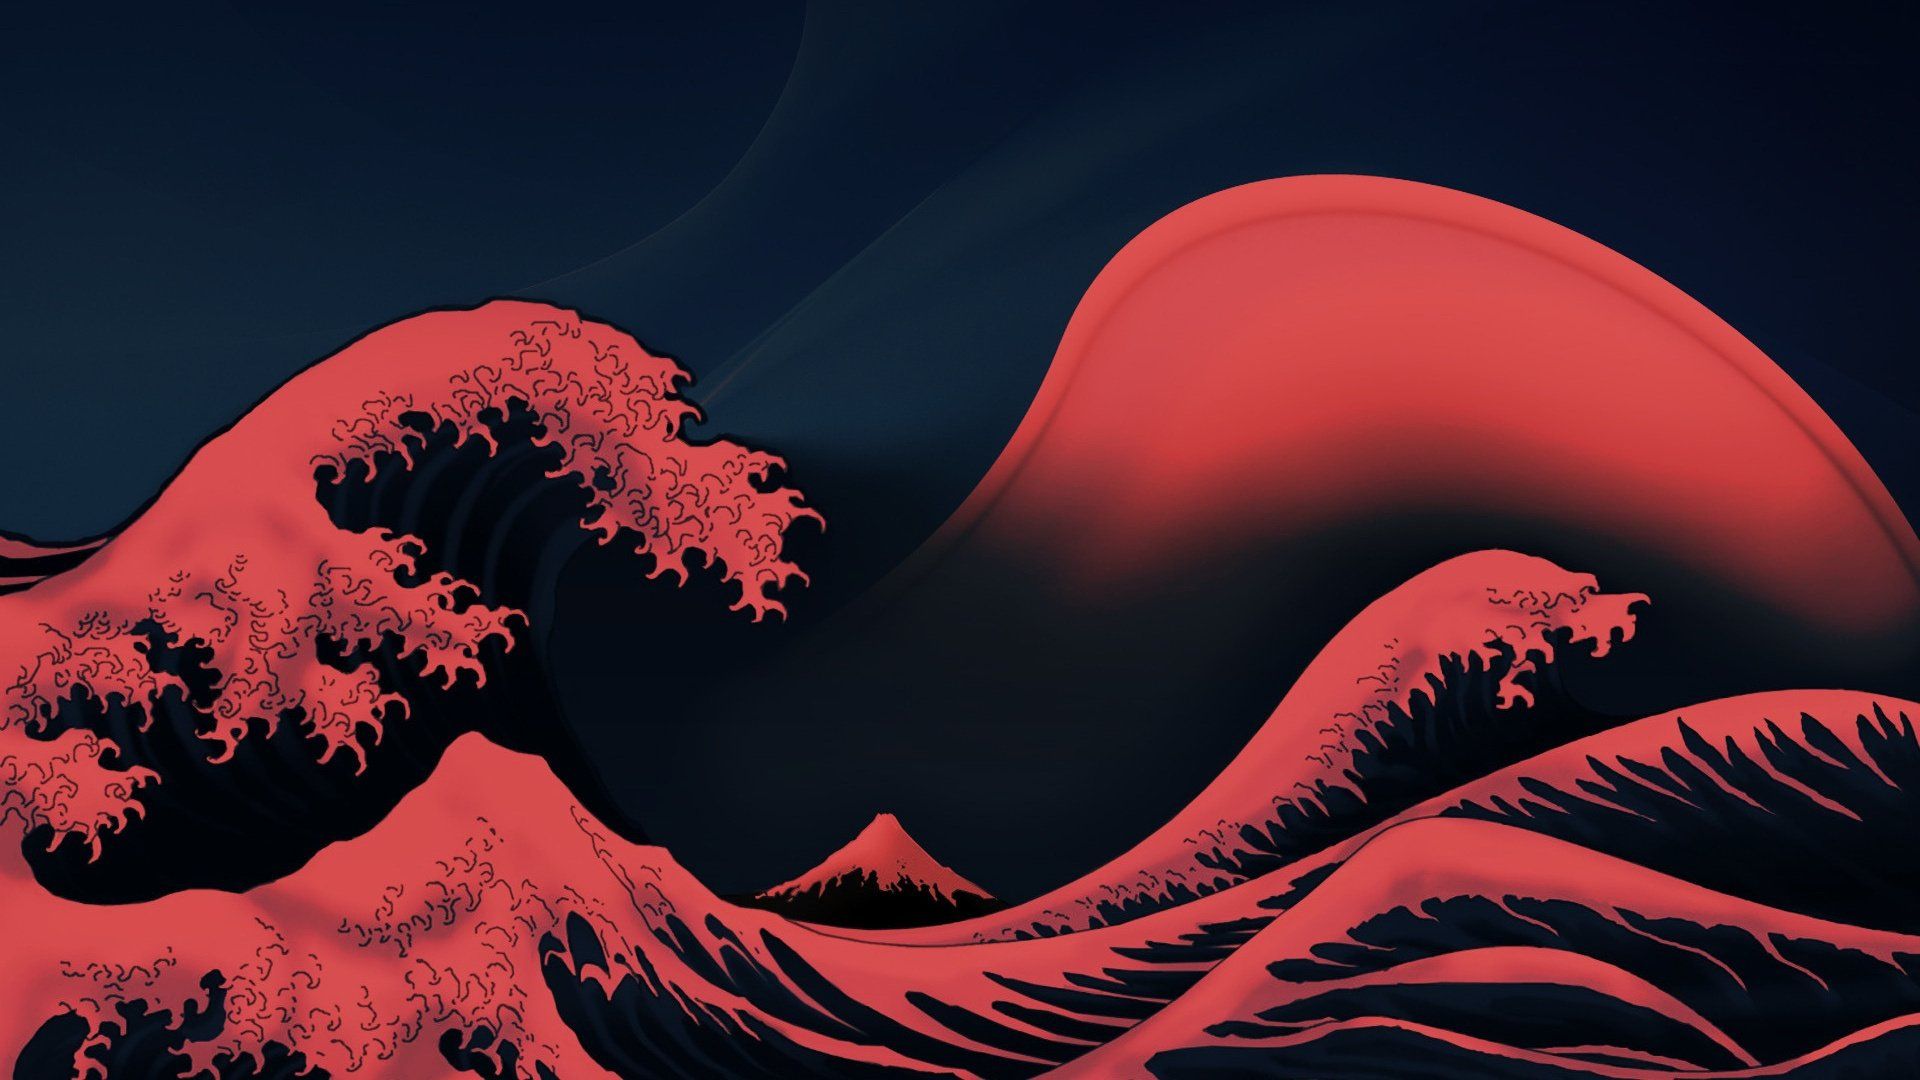 Sóng đỏ: Với tông màu đỏ sắc nét và gợi cảm, hình ảnh sóng đỏ sẽ đem đến cho bạn cảm giác sống động và mạnh mẽ. Chứng kiến sức mạnh của sóng và cảm nhận sự hùng mạnh của màu đỏ bằng cách xem hình ảnh này!